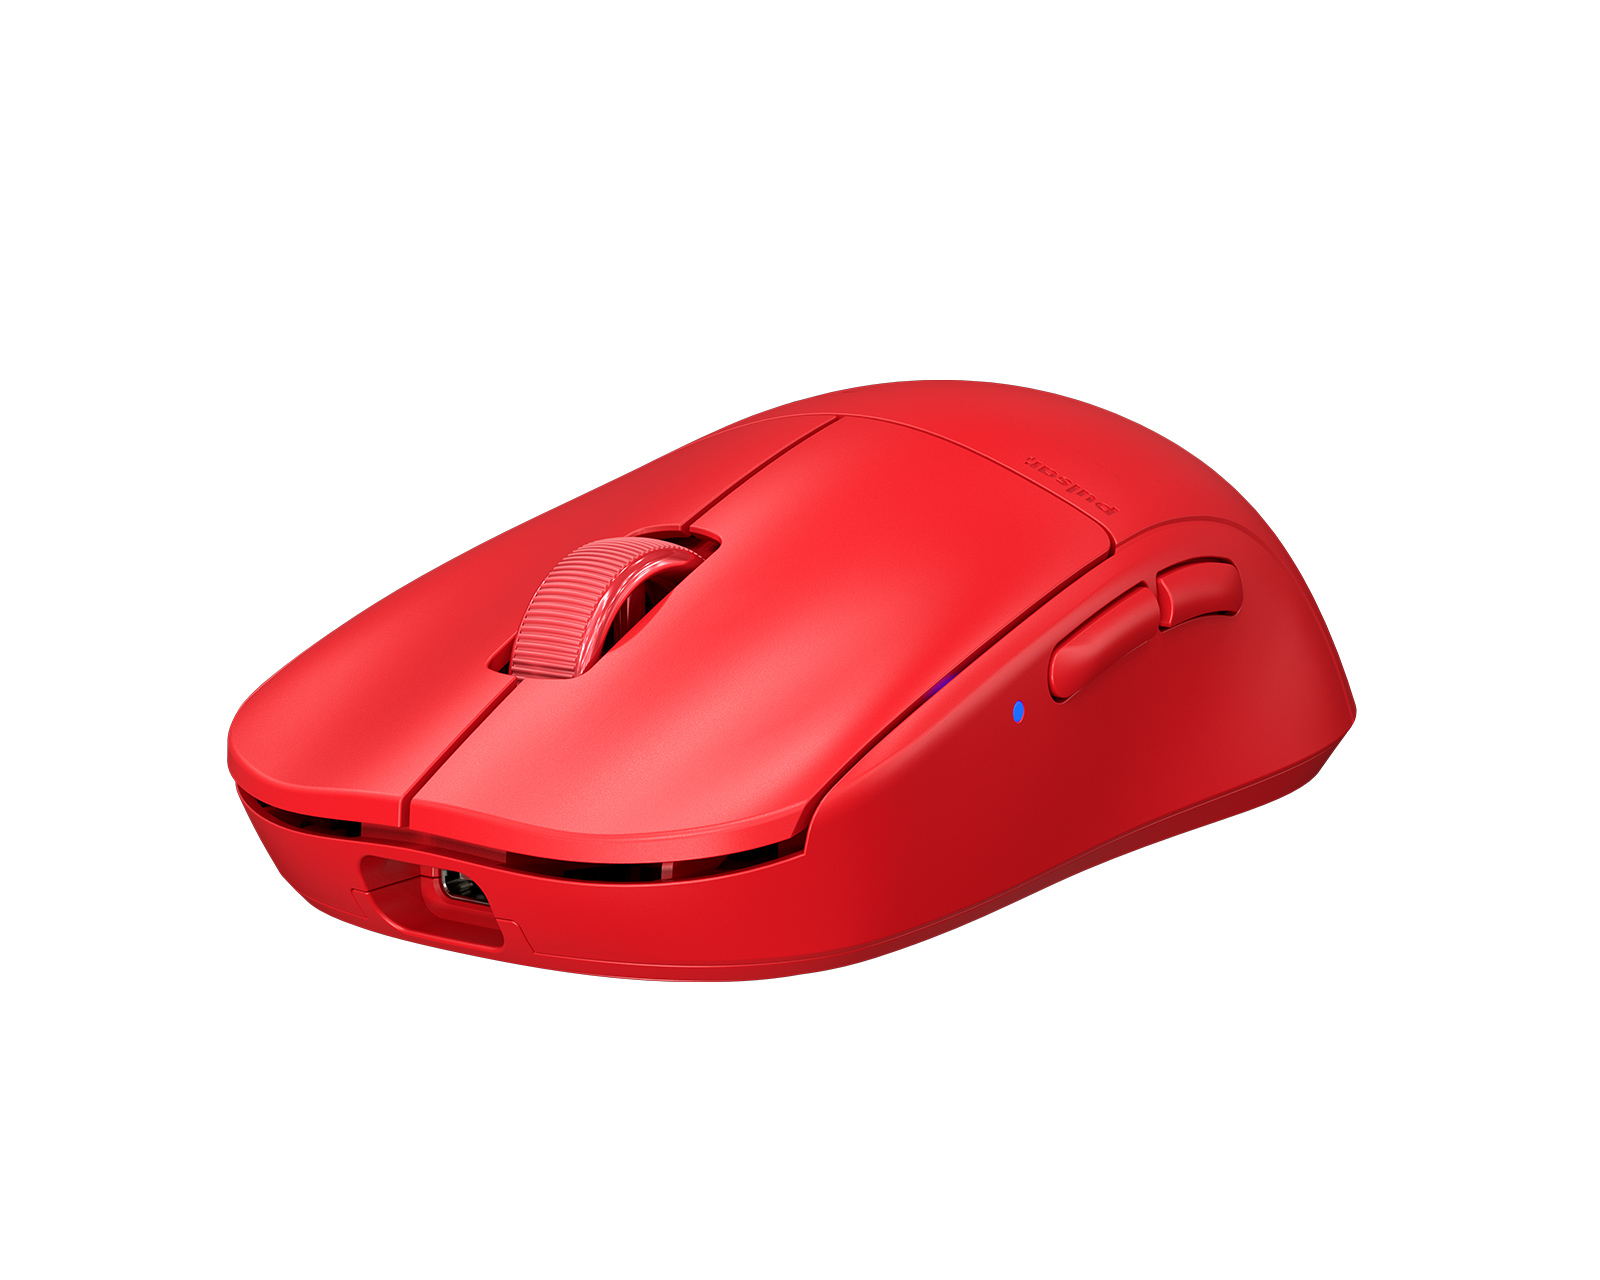 Pulsar X2 Wireless Gaming Mouse - Red - MaxGaming.com